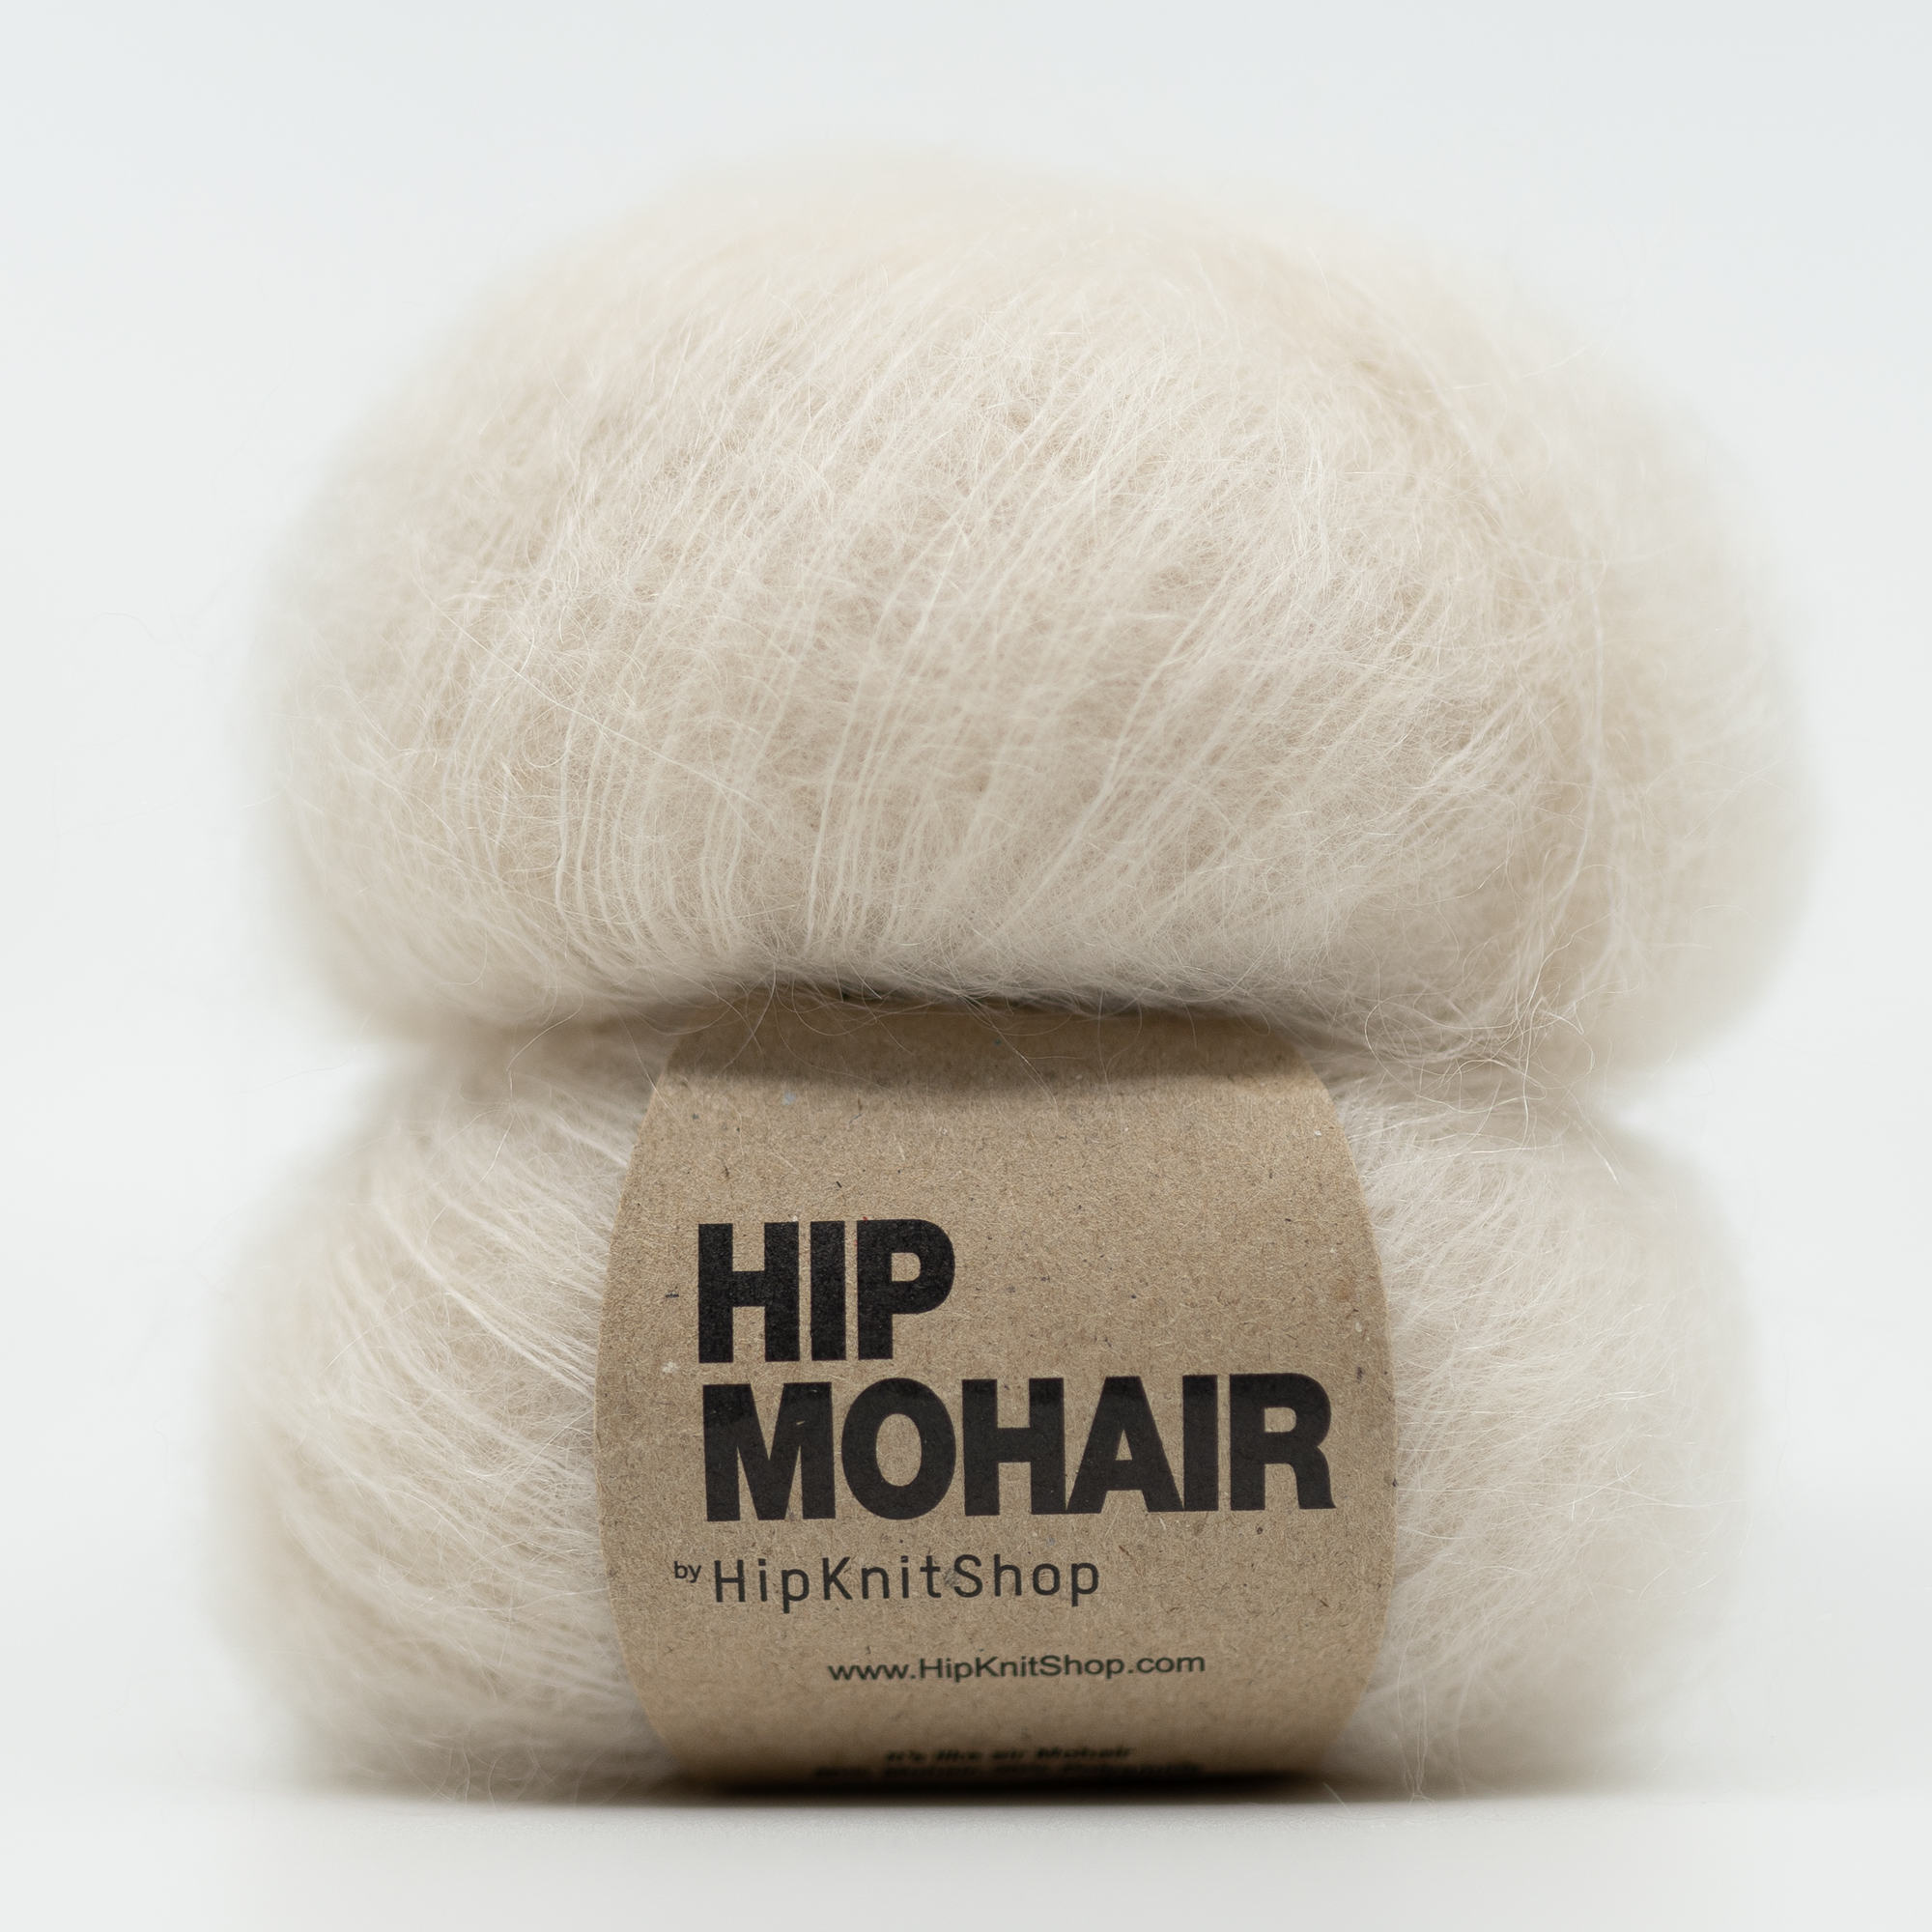  - Latte lover mohair | Hip Mohair garn - av HipKnitShop. - 12/12/2021